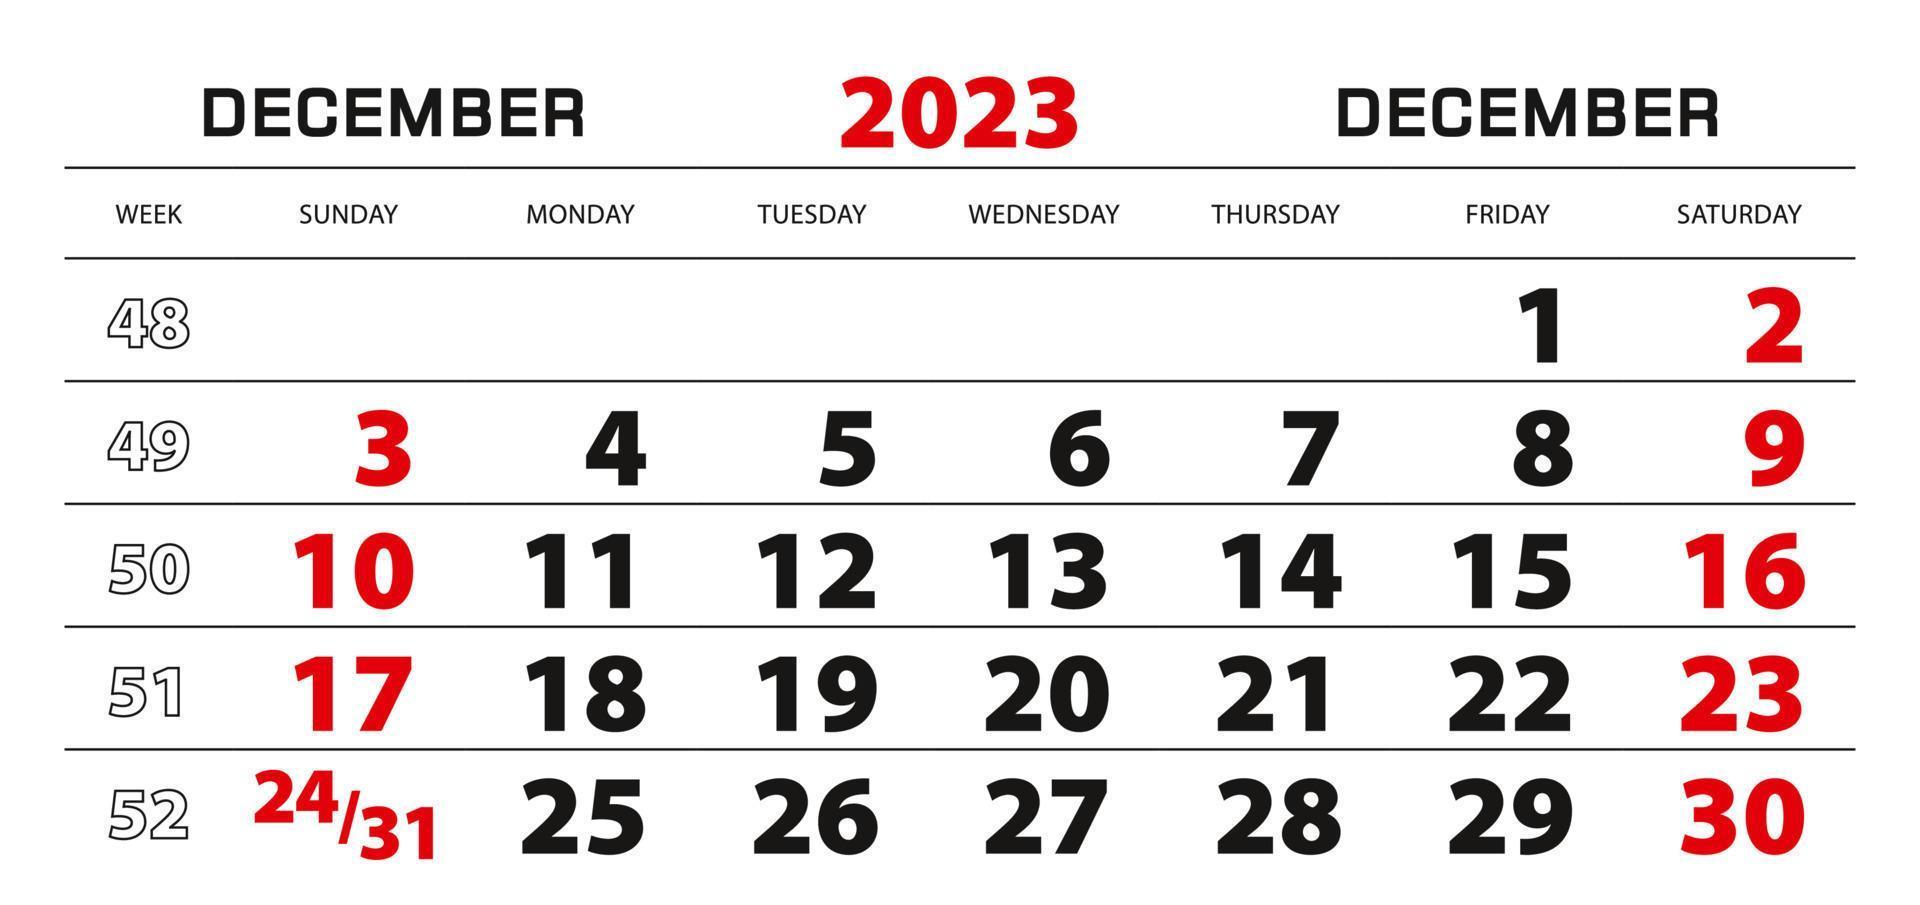 Wall calendar 2023 for december, week start from sunday. vector